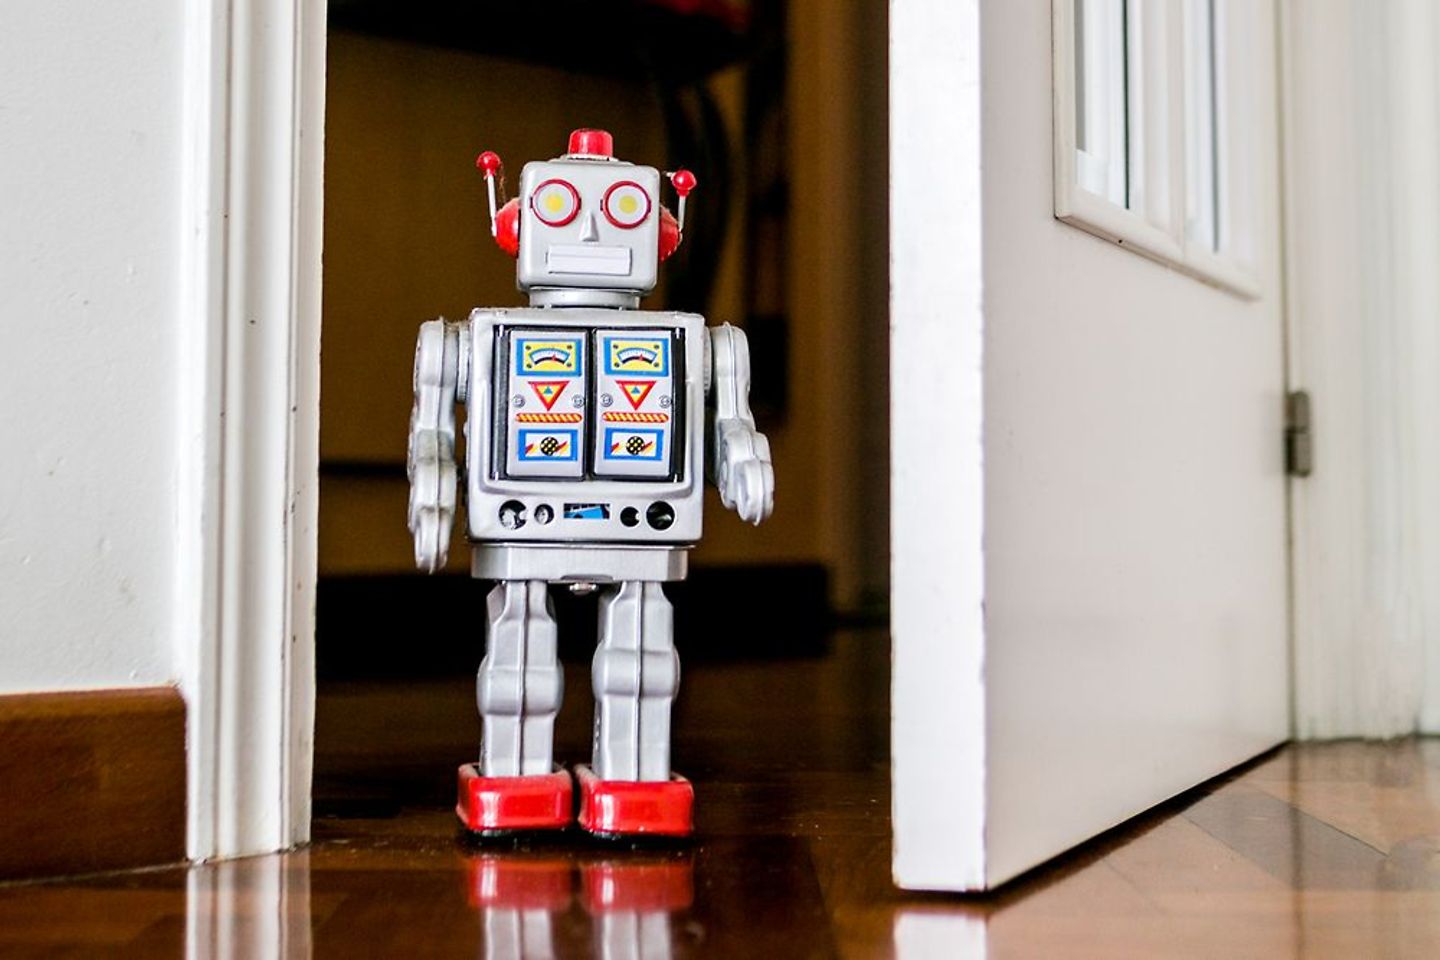 A friendly robot enters through an open office door